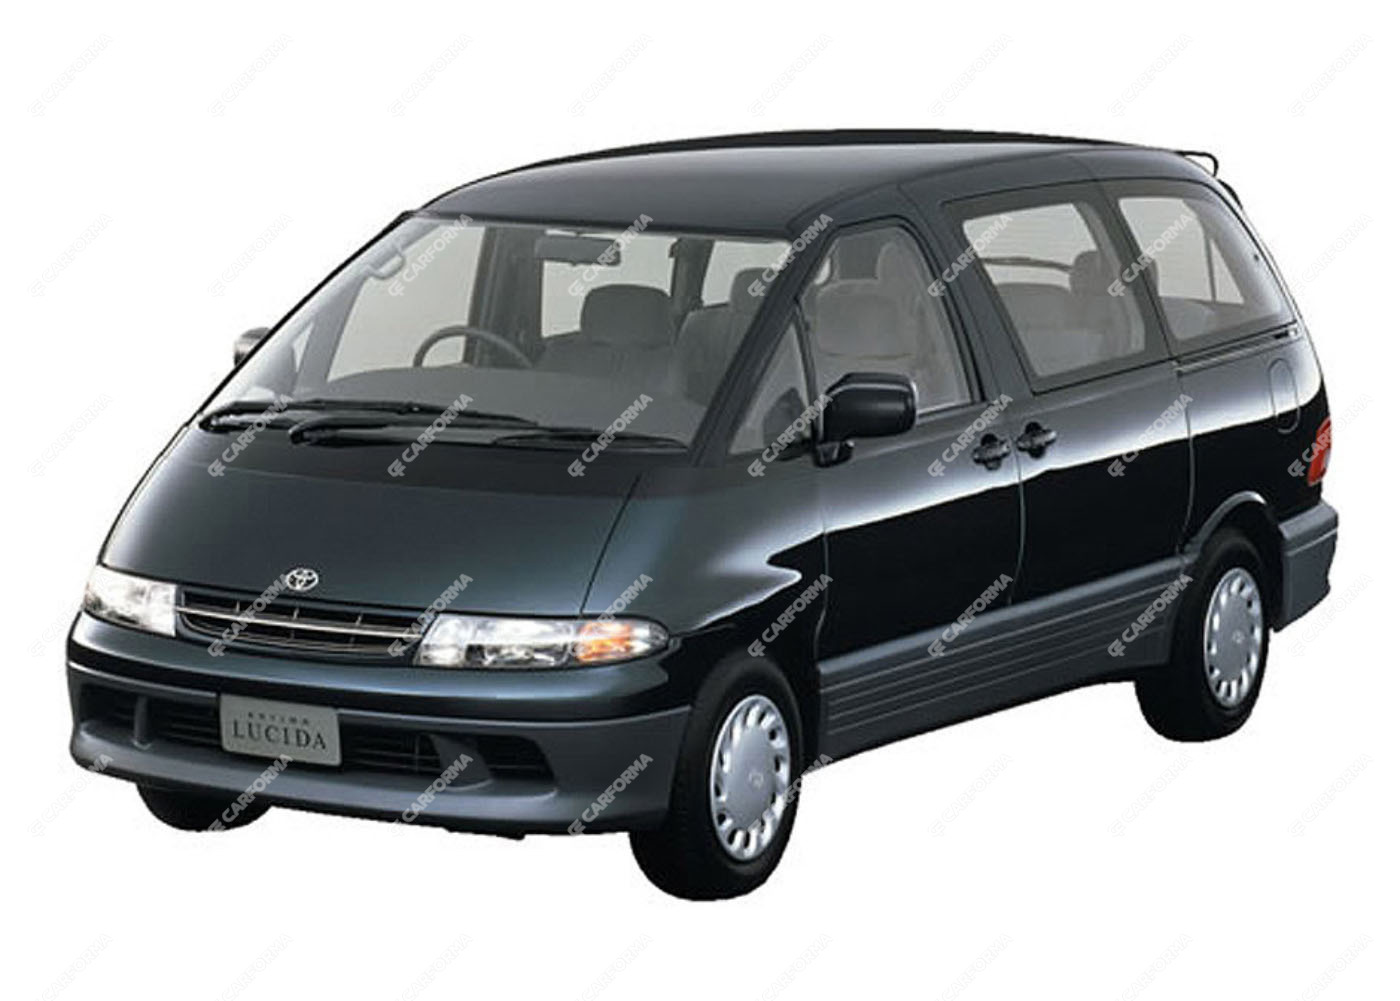 Ворсовые коврики на Toyota Estima Emina (Lucida) 1990 - 2000